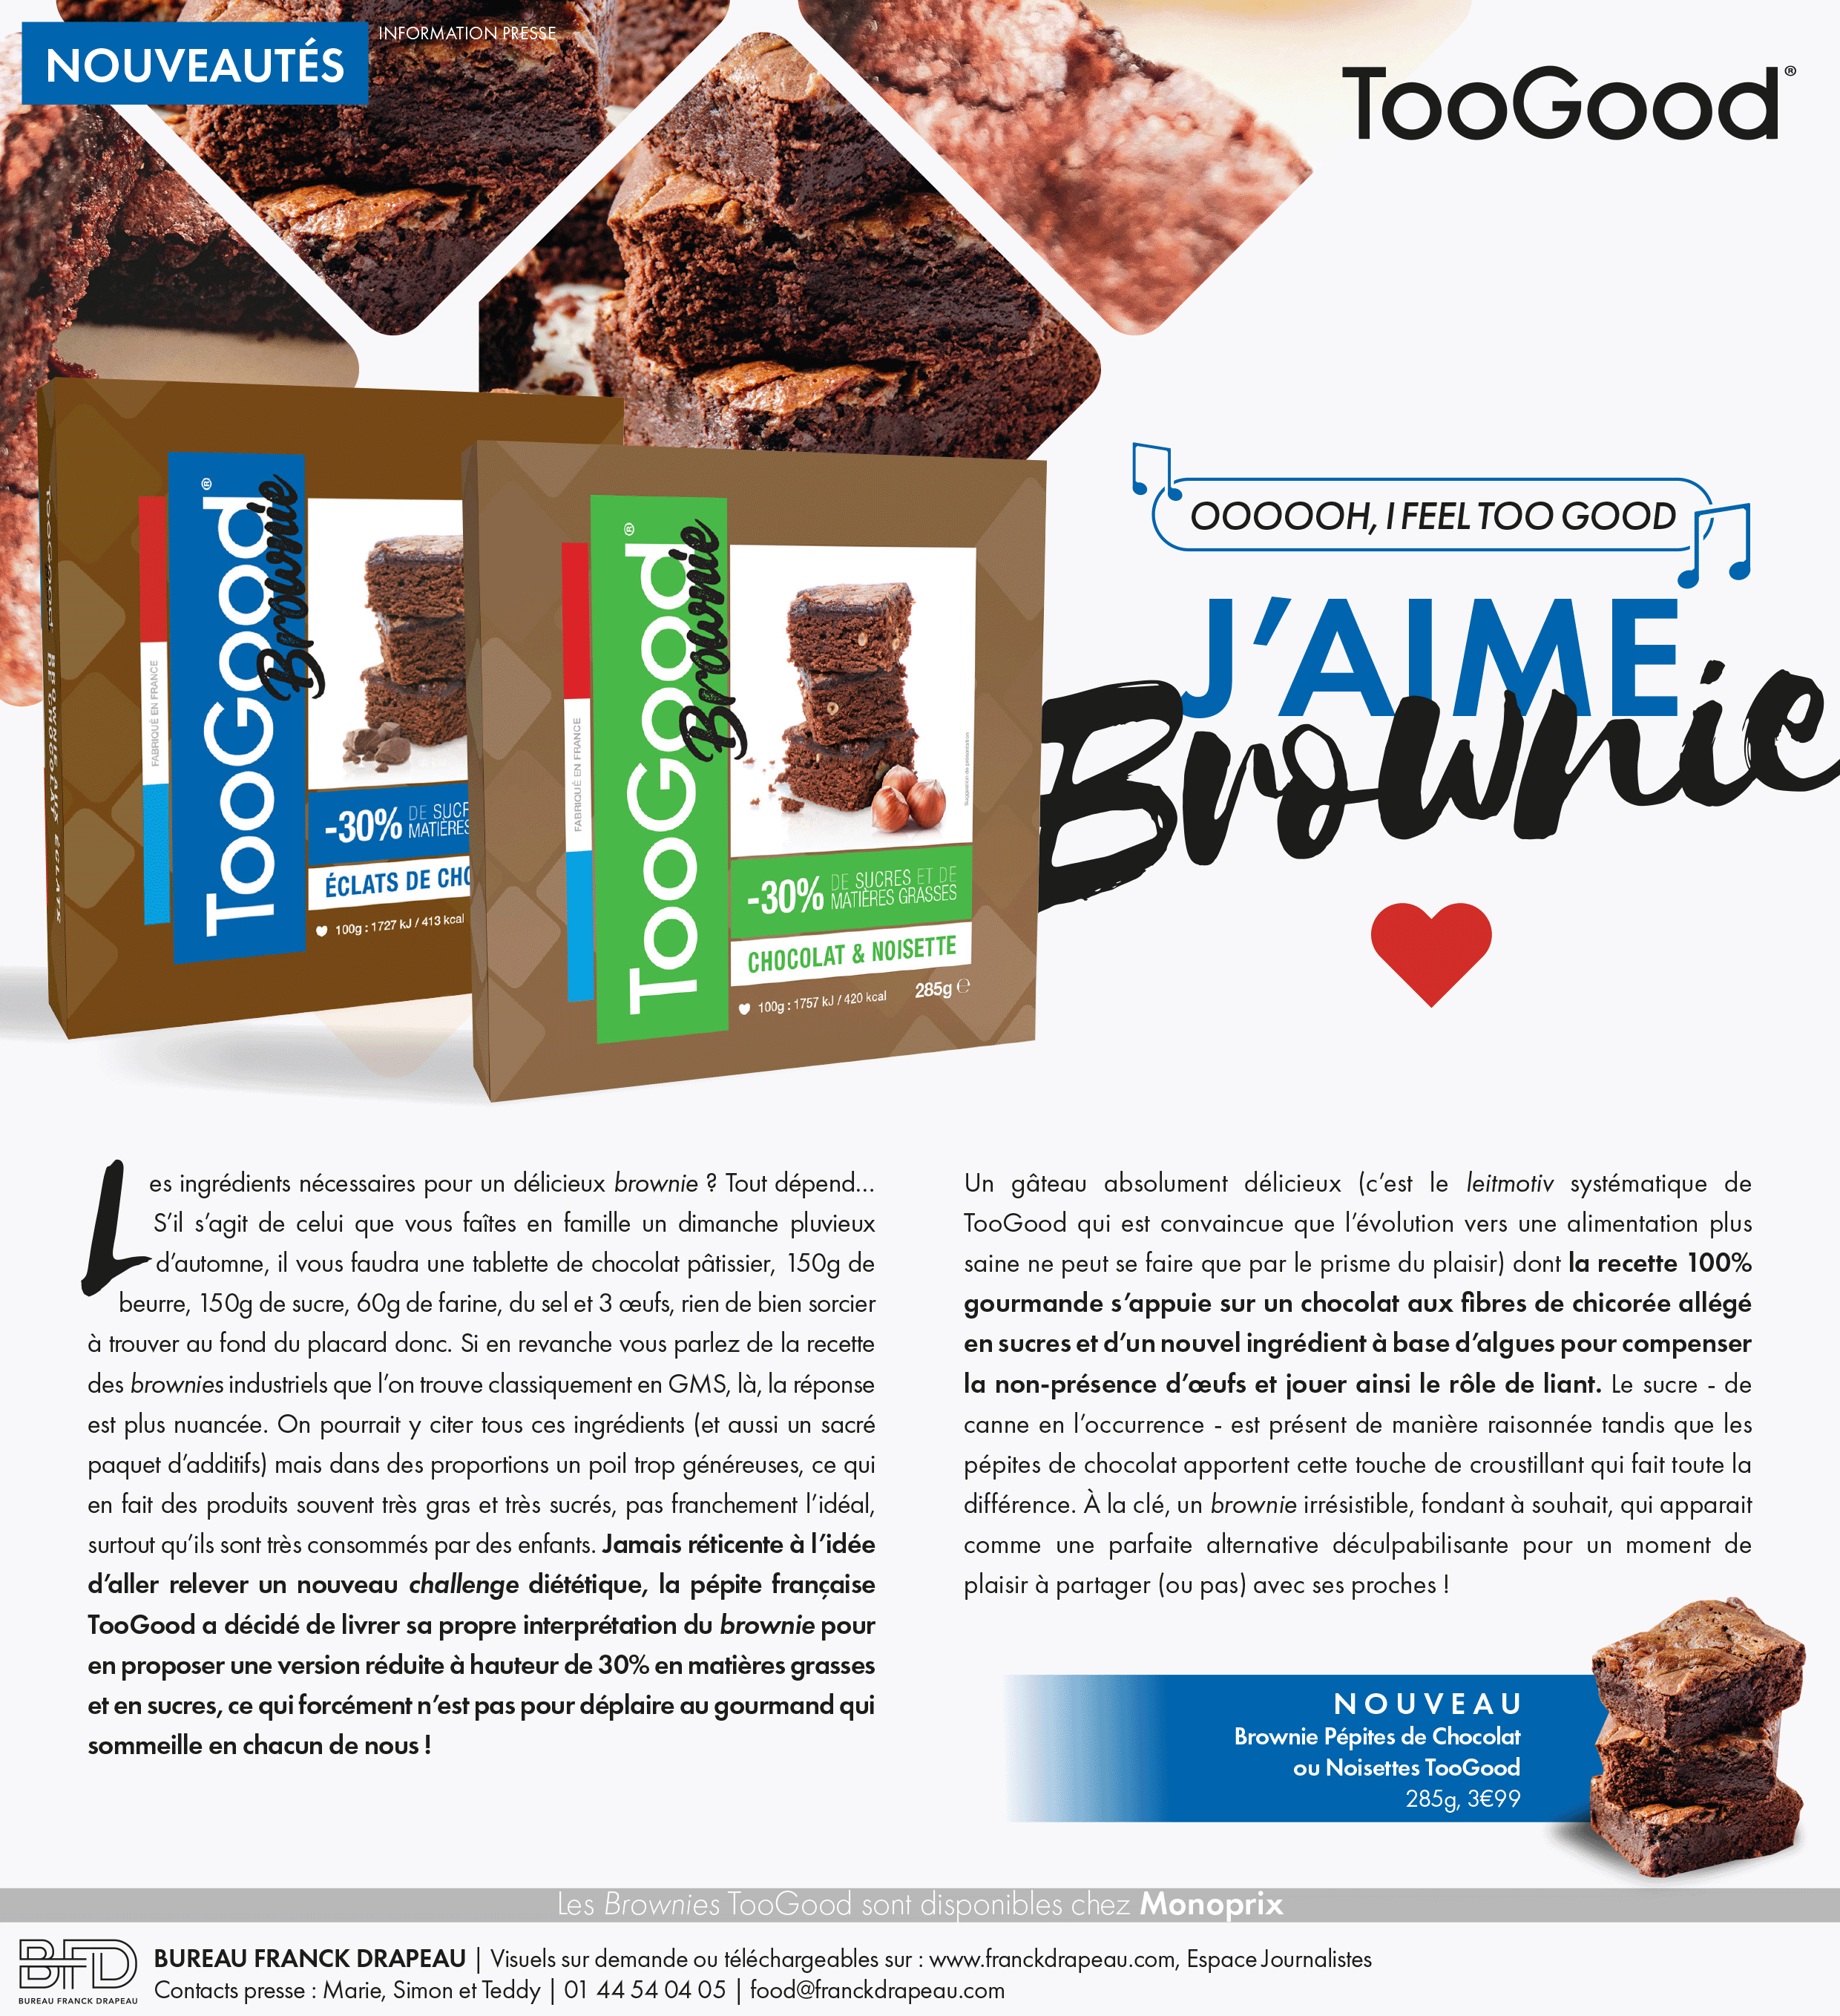 Too Good | Brownies